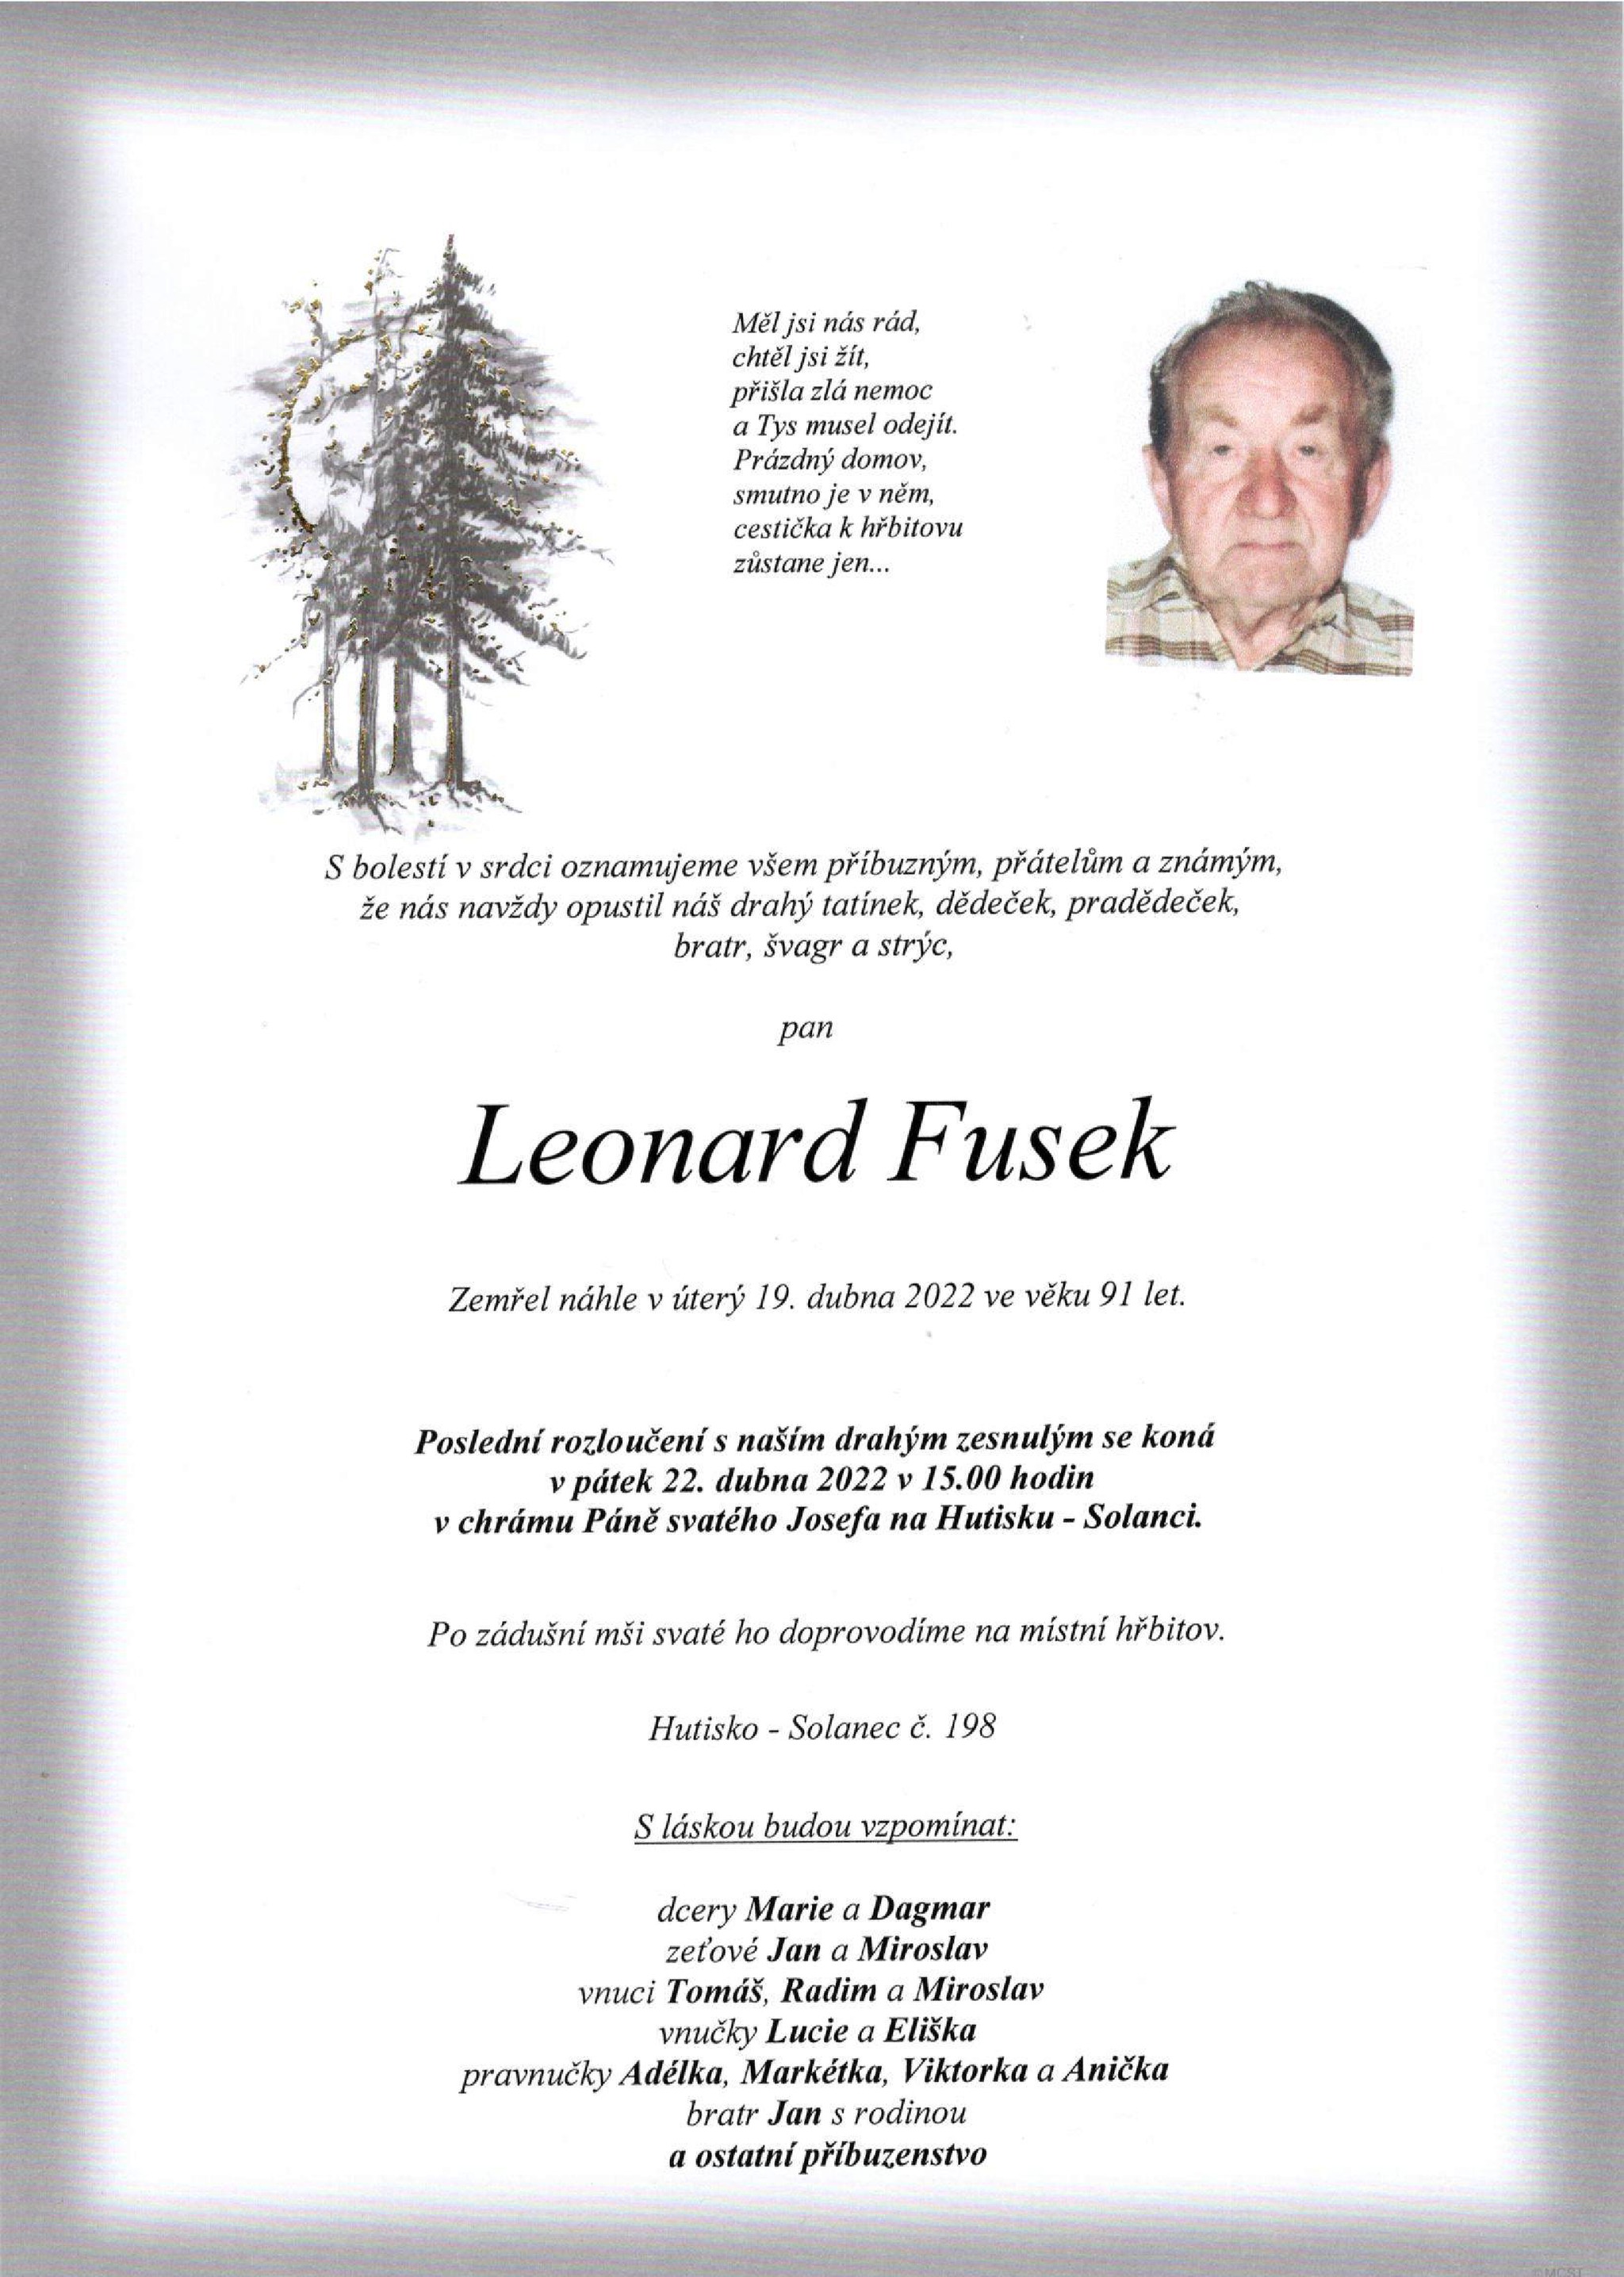 Leonard Fusek